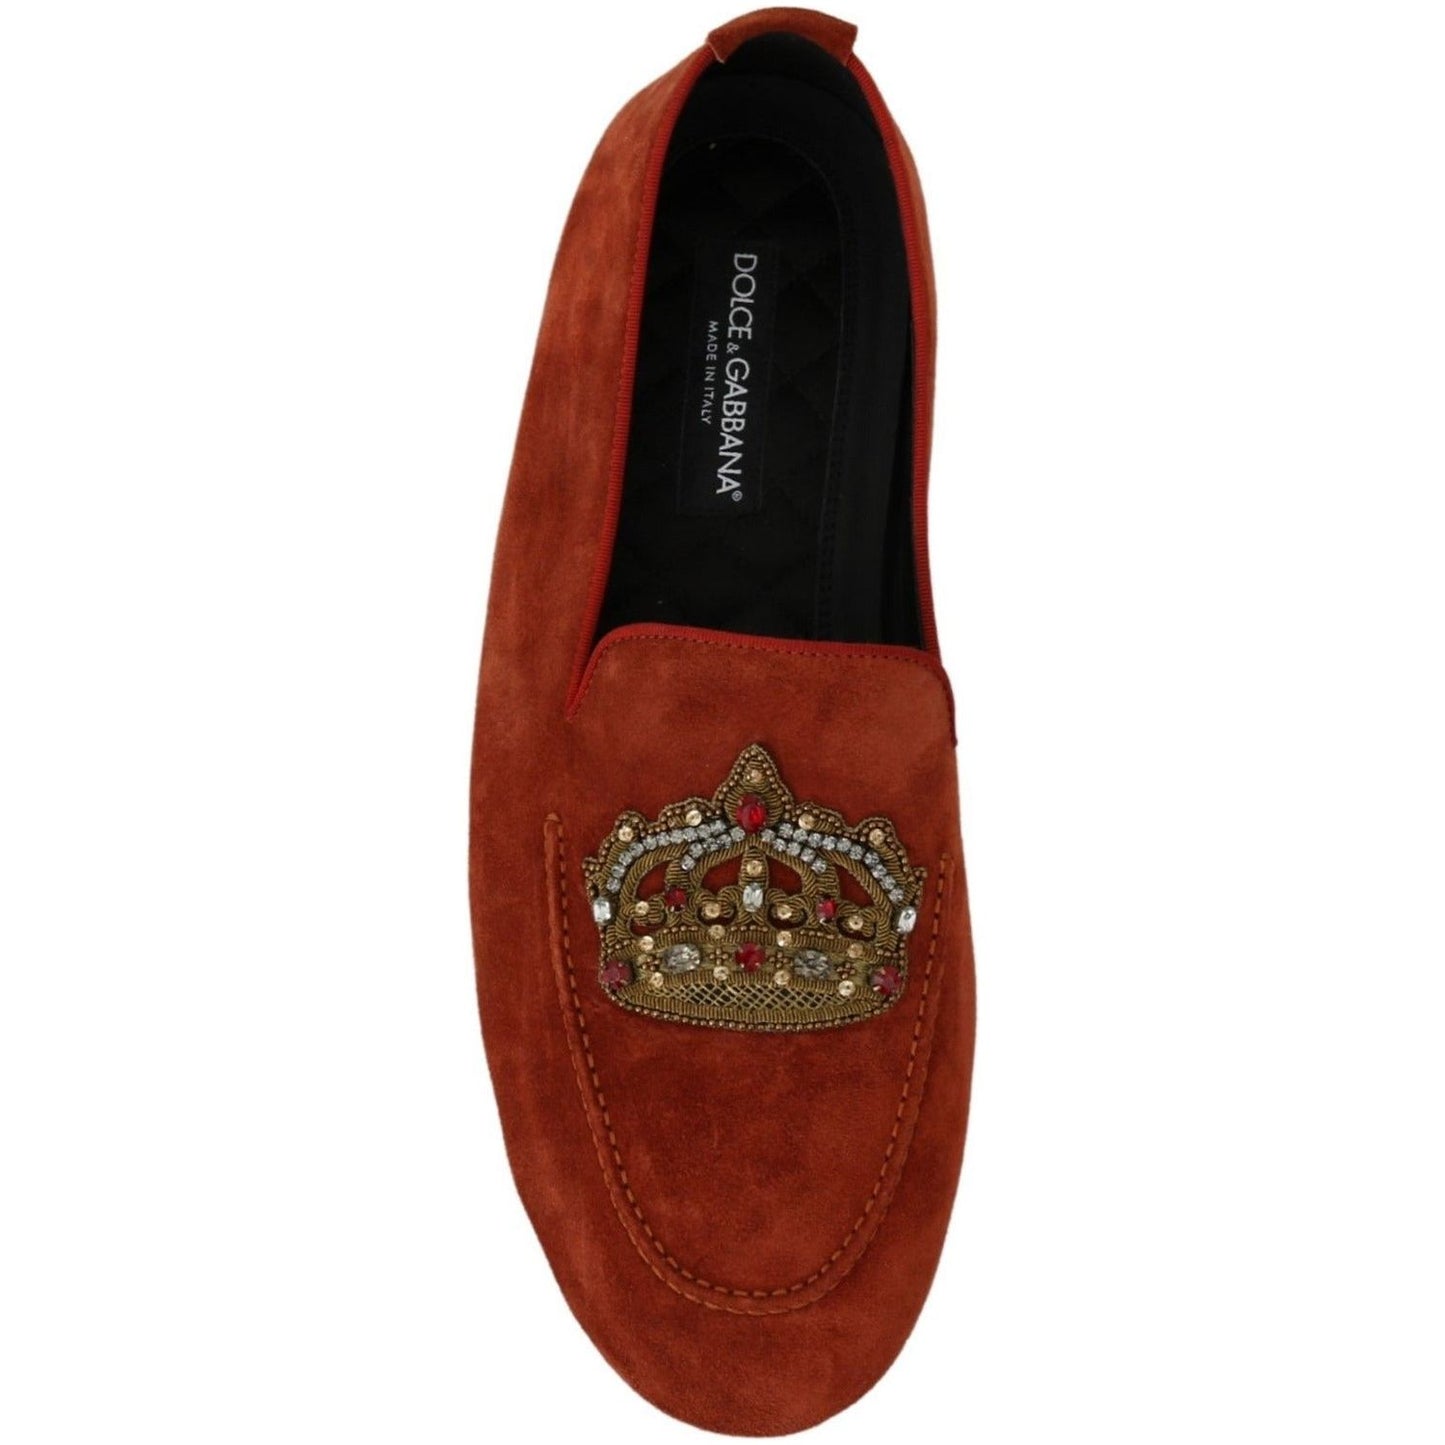 Dolce & Gabbana Elegant Orange Leather Moccasin Slippers orange-leather-moccasins-crystal-crown-slippers-shoes IMG_7333-5c99aea7-247.jpg